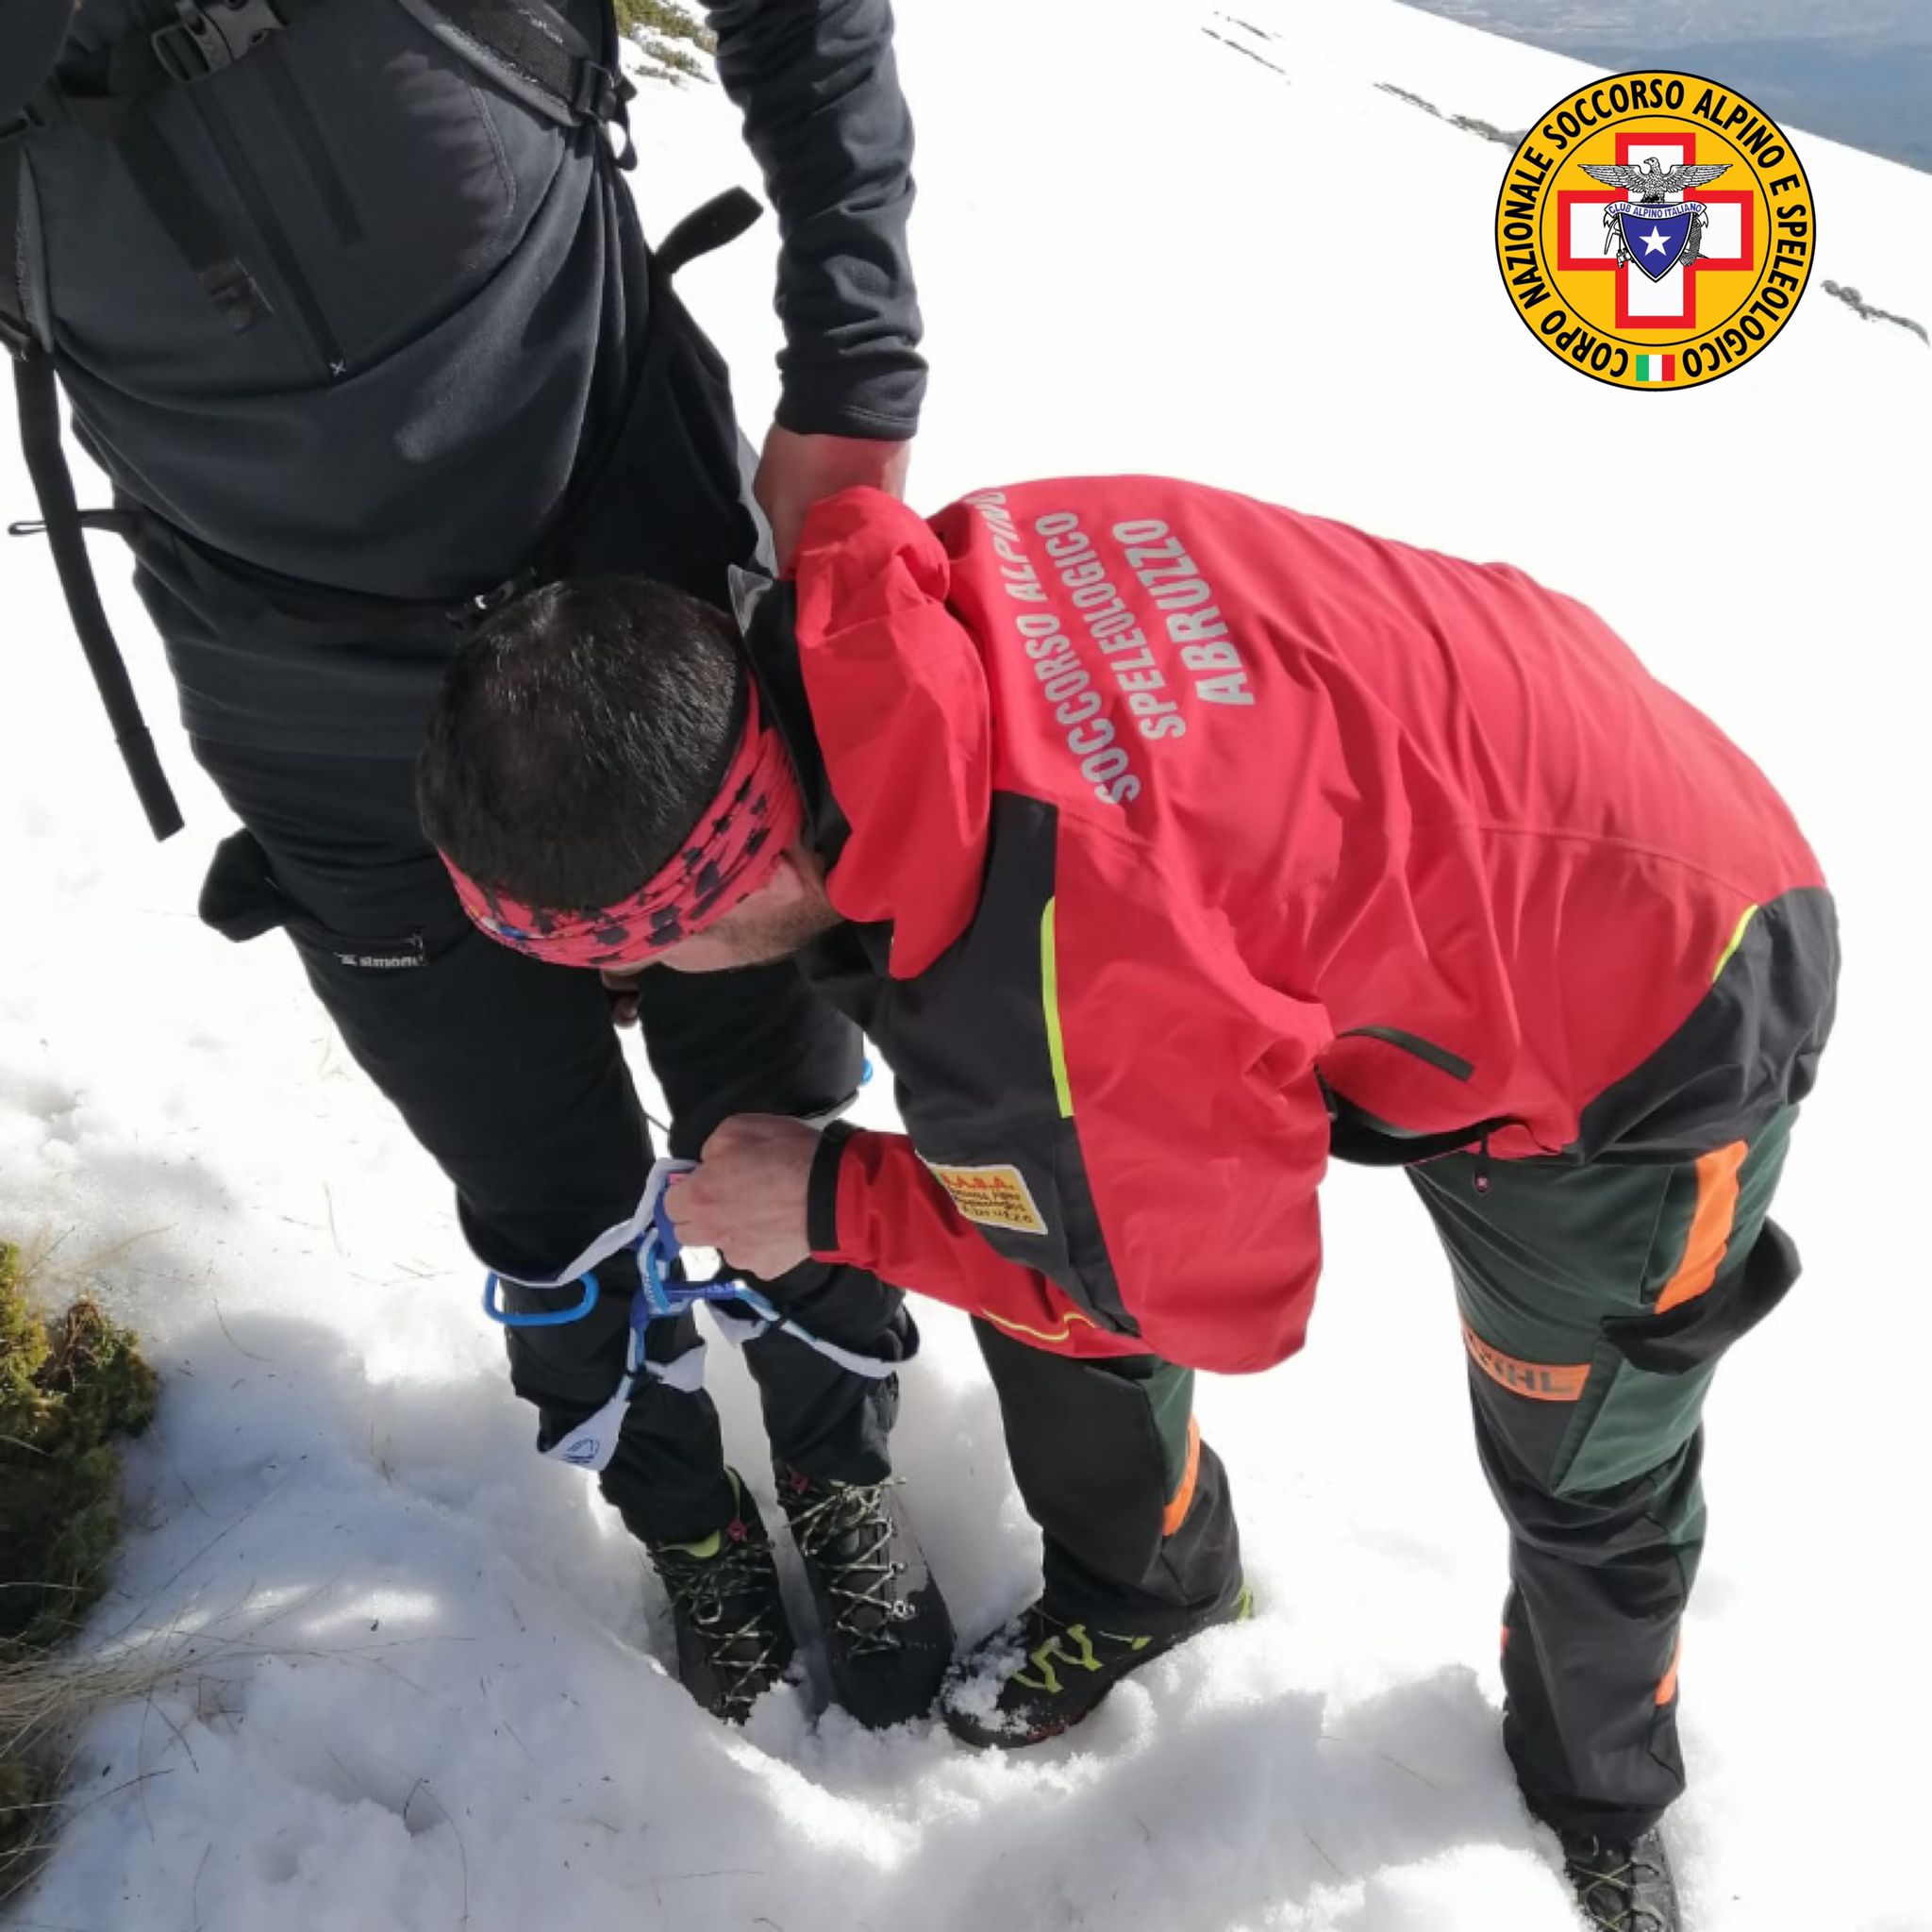 La squadra di Avezzano del soccorso alpino era ai funerali dei 4 dispersi sul Velino, quando è tornata in azione per recuperare due alpinisti, dopo un volo di 70 metri